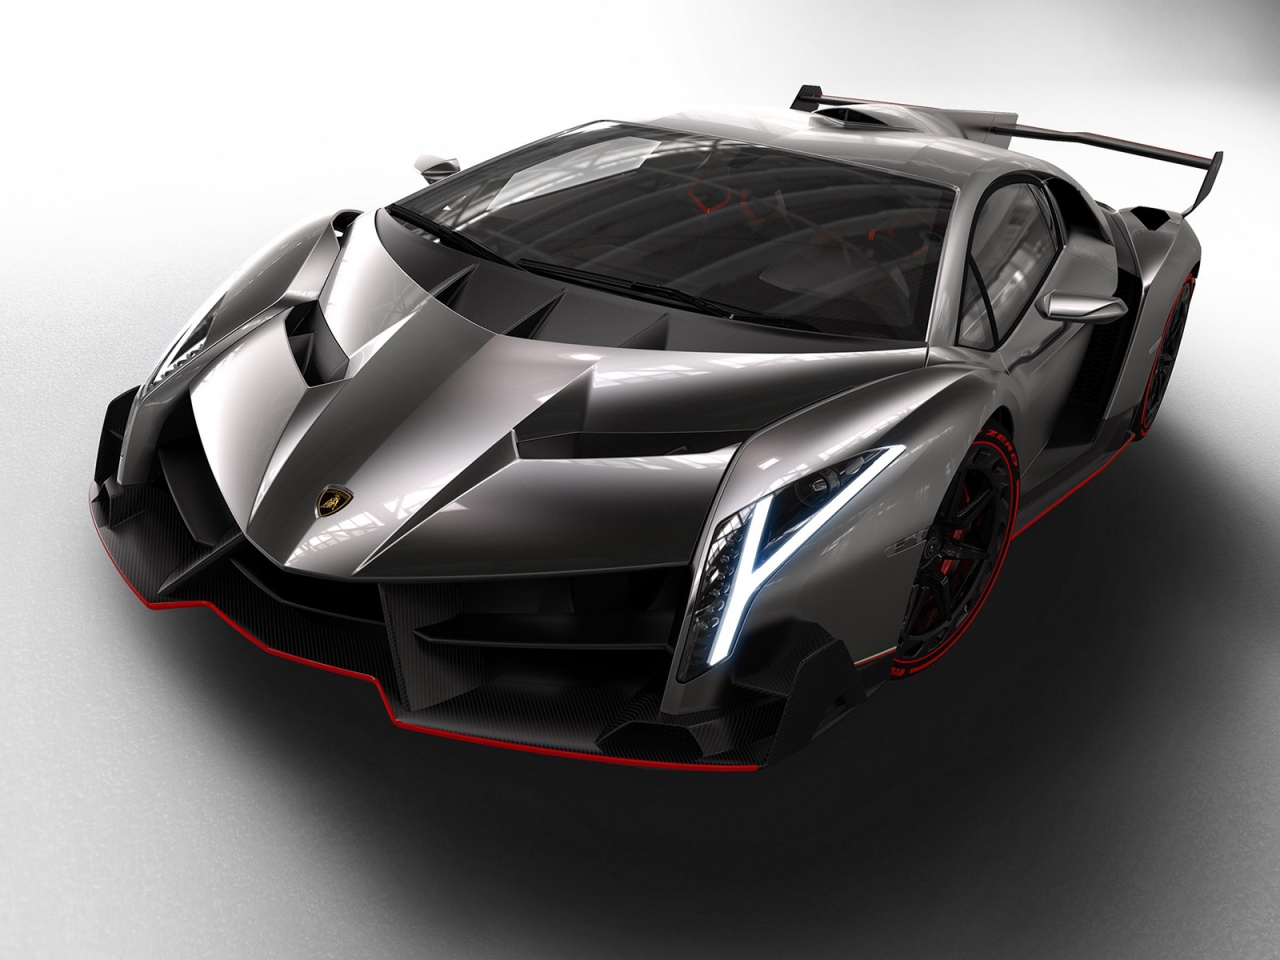 Lamborghini Veneno Studio for 1280 x 960 resolution